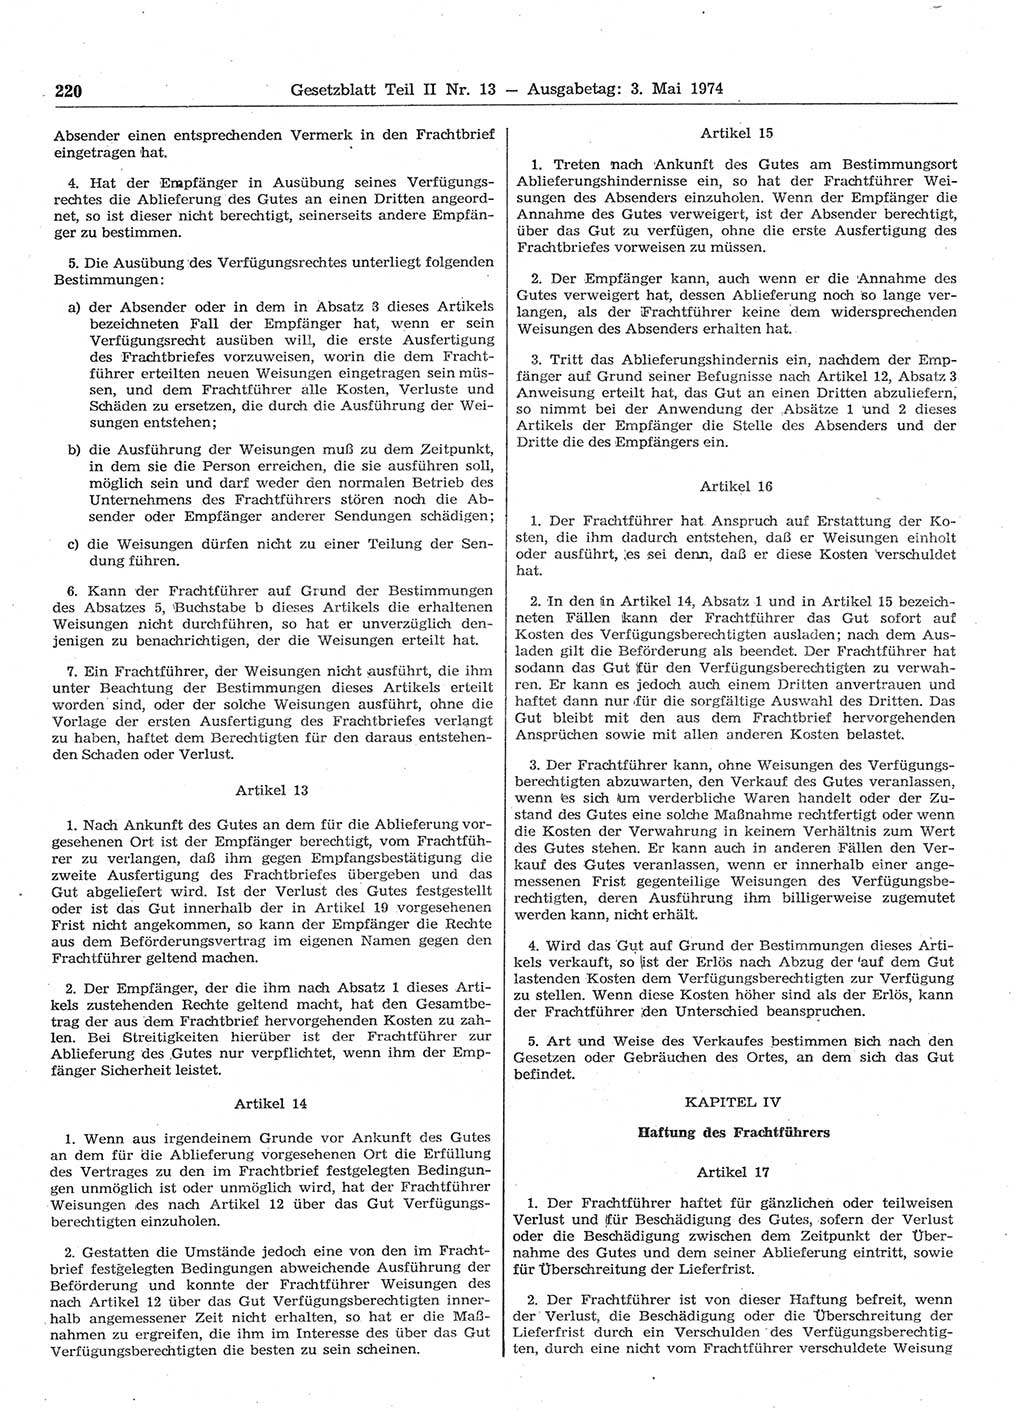 Gesetzblatt (GBl.) der Deutschen Demokratischen Republik (DDR) Teil ⅠⅠ 1974, Seite 220 (GBl. DDR ⅠⅠ 1974, S. 220)